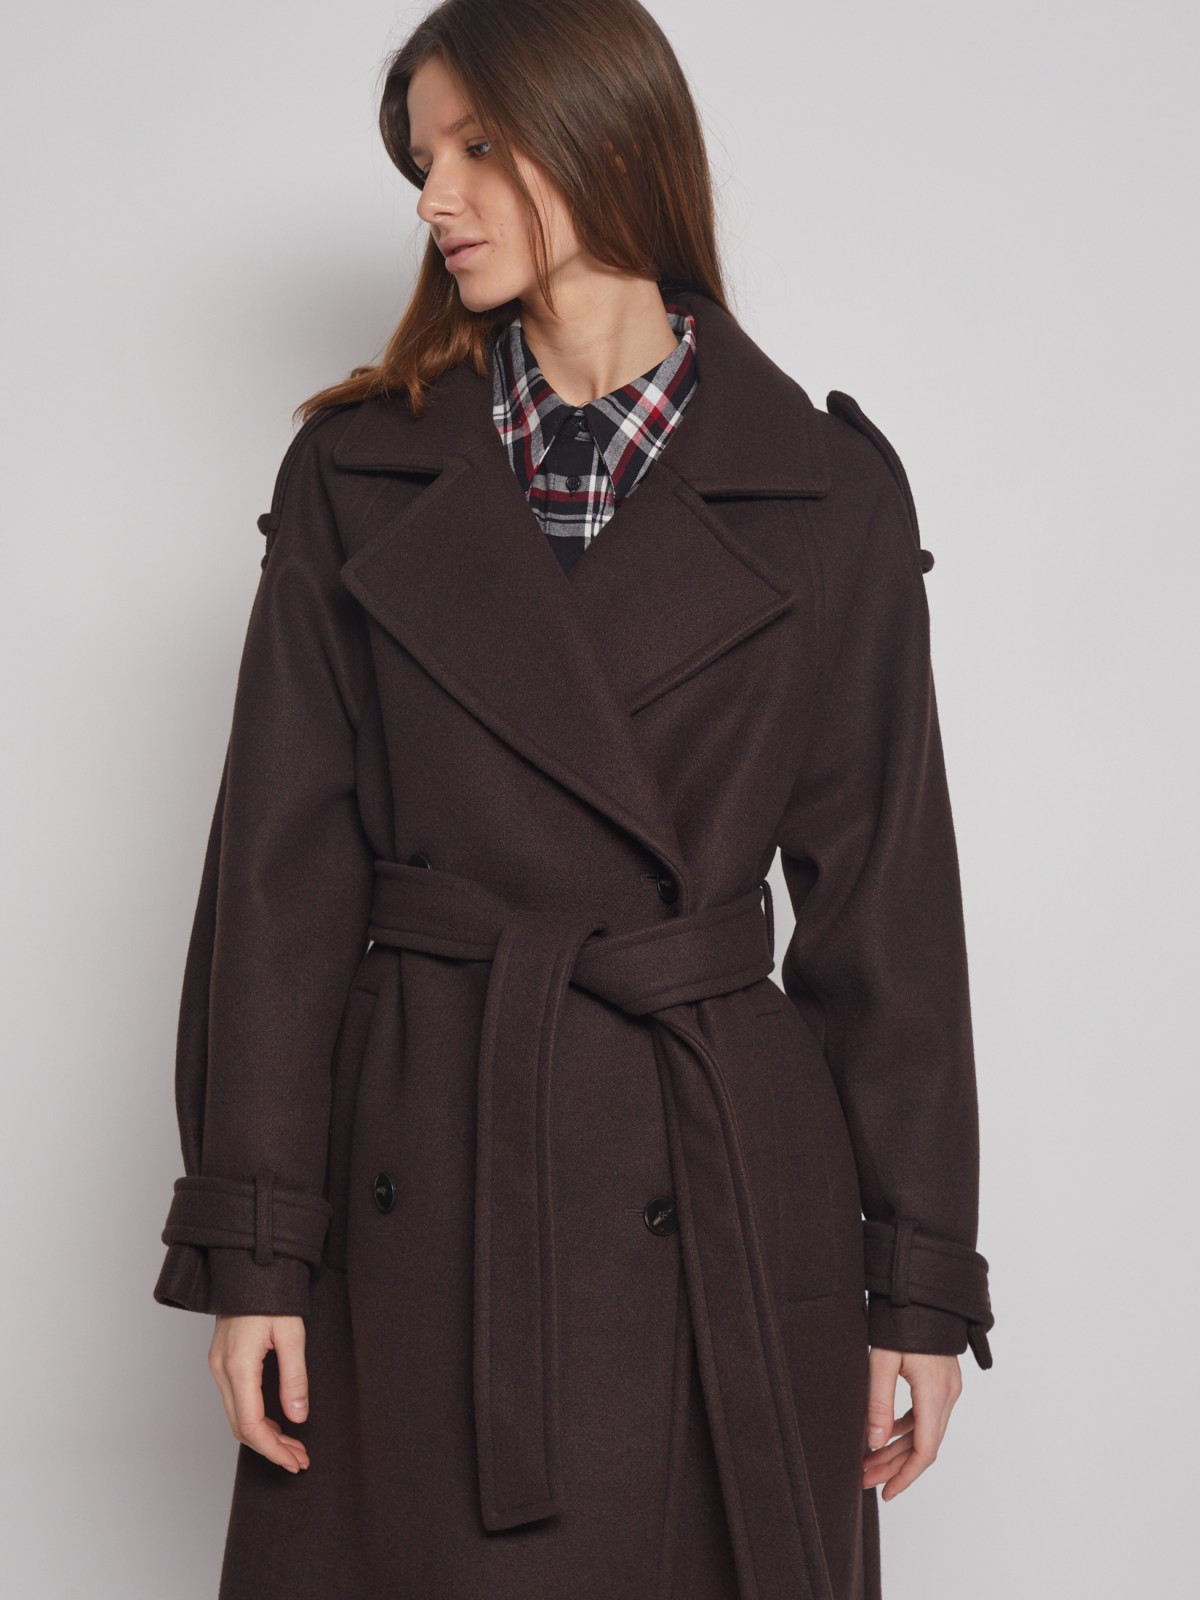 Двубортное пальто-тренч с поясом zolla 02312580Y044, цвет коричневый, размер XS - фото 4